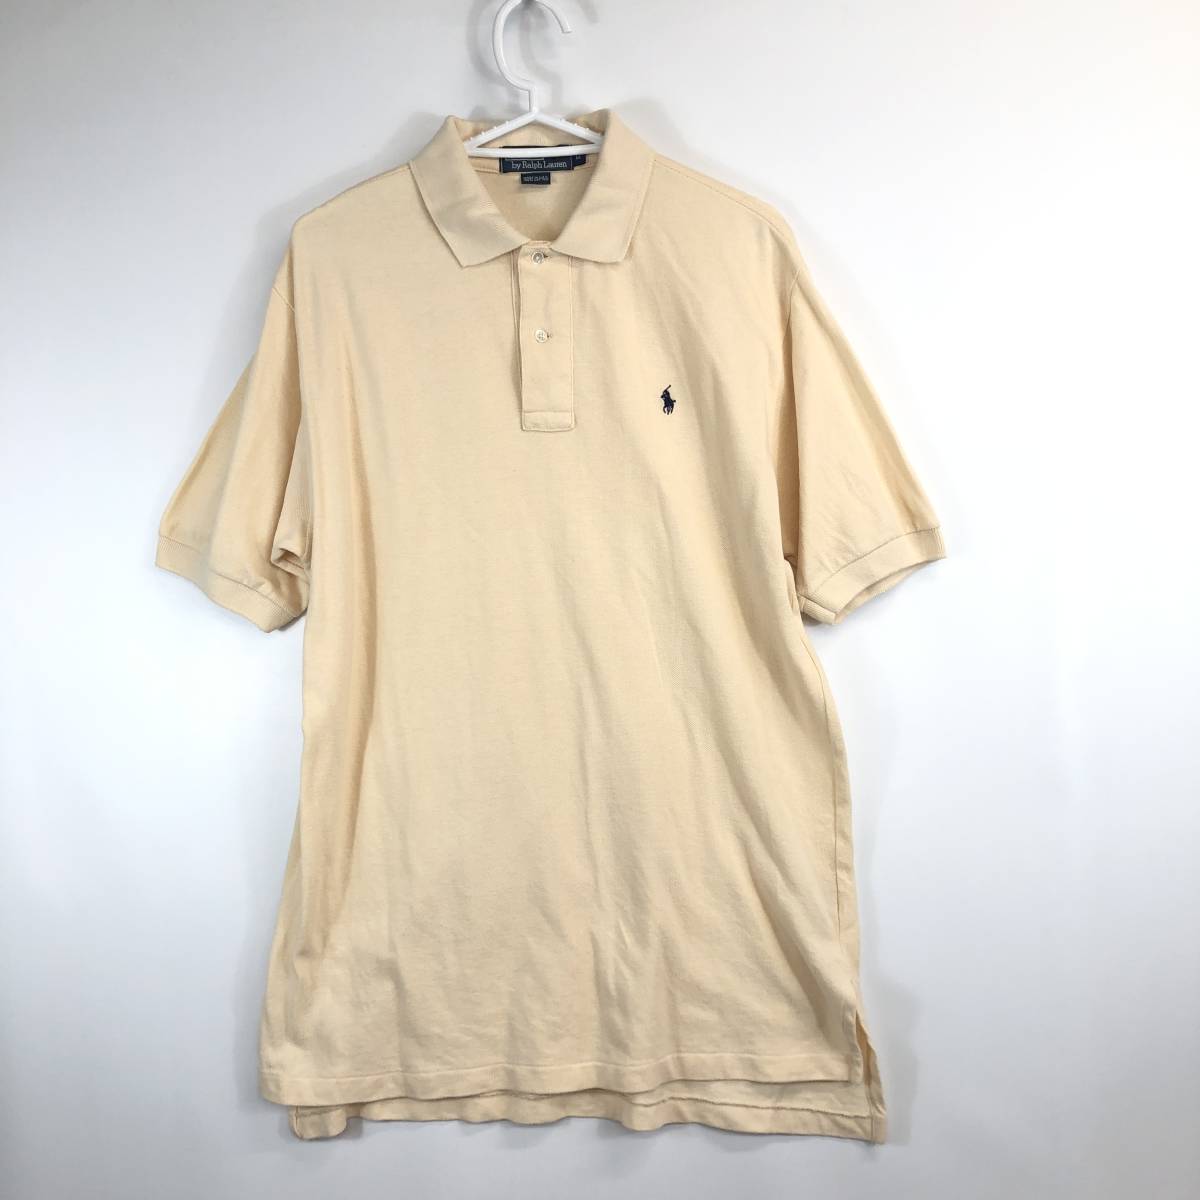 90s USA製 ラルフローレン Ralph Lauren ポロシャツ クリーム色 Mサイズ